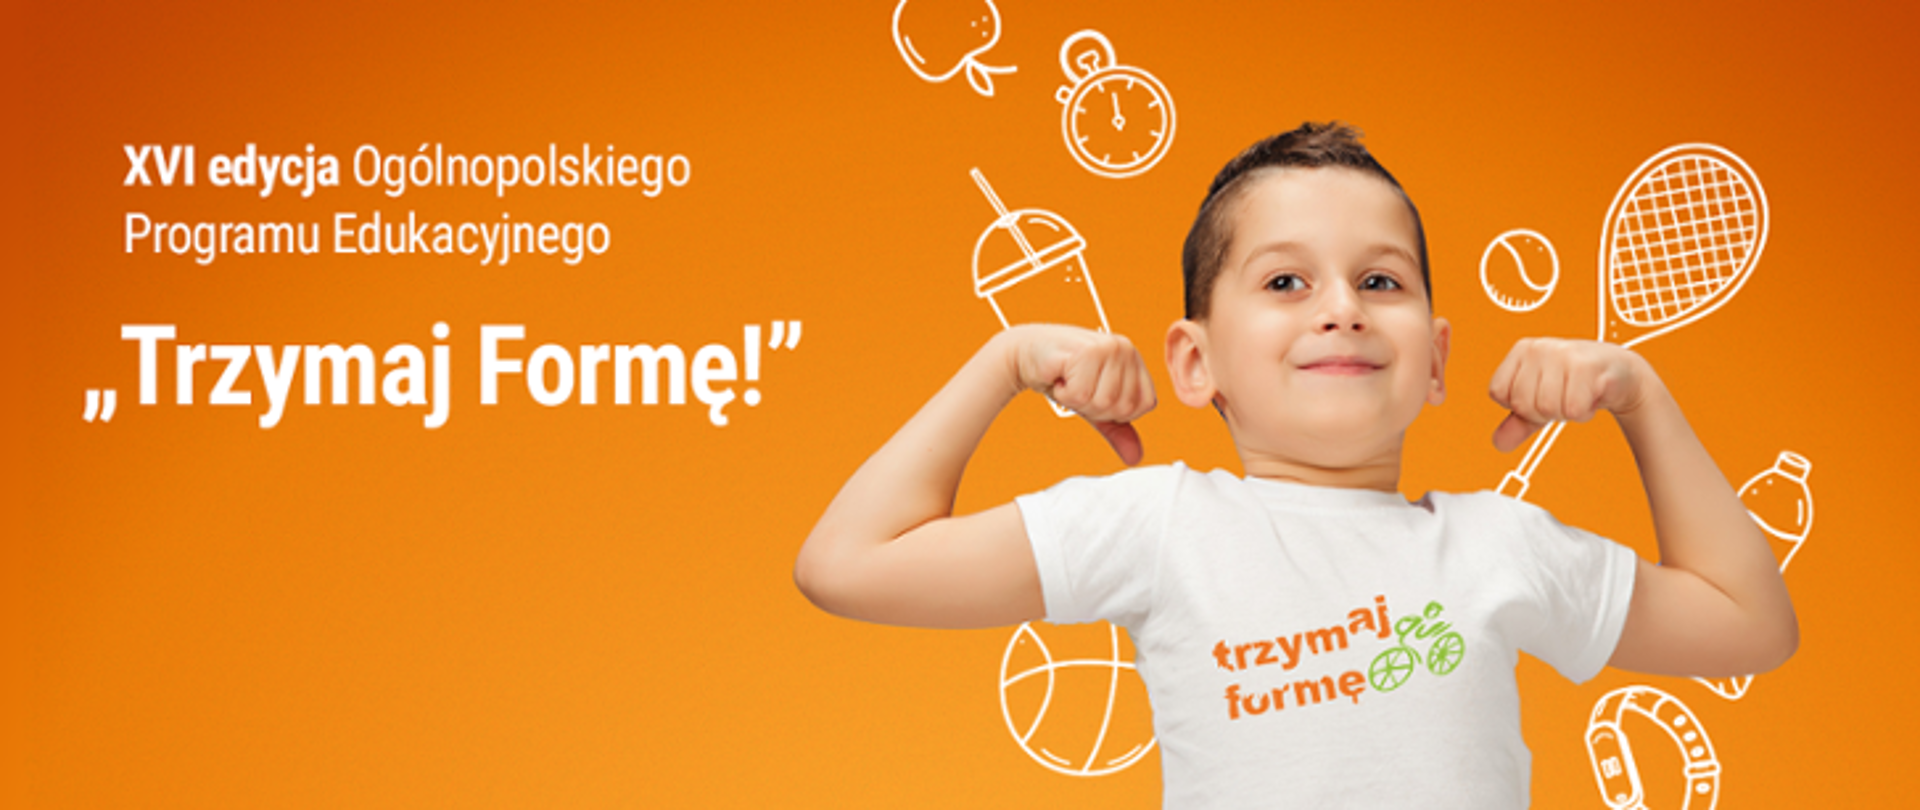 Na zdjęciu uśmiechnięty chłopiec z uniesionymi rękami w koszulce z logo programu Trzymaj formę Szesnasta edycja Ogólnopolskiego Programu Edukacyjnego "Trzymaj formę!" 